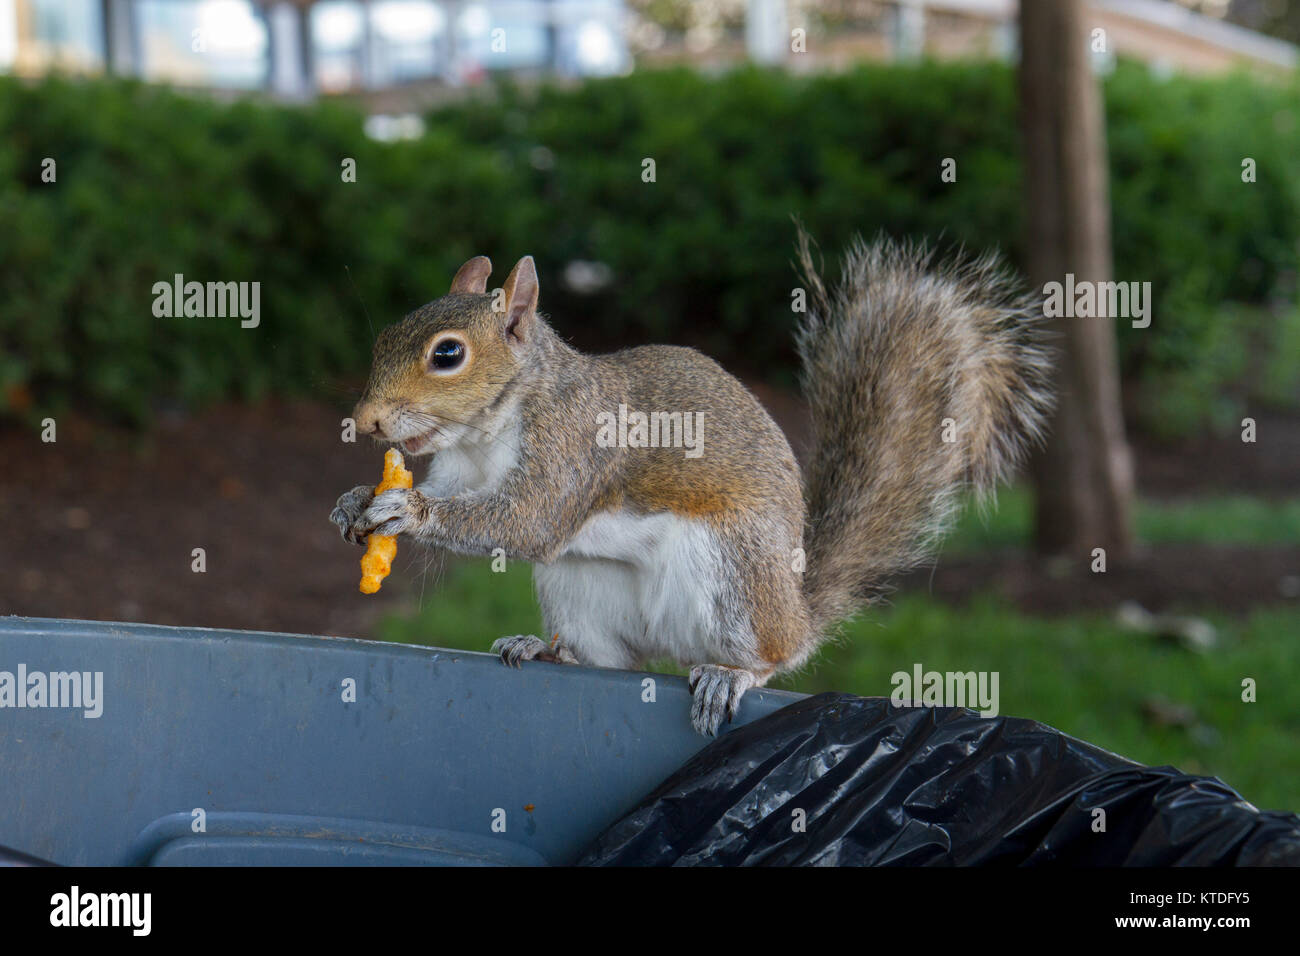 Un écureuil gris de manger une pomme de terre (pomme de terre frites) assis sur une poubelle, Philadelphia, Pennsylvania, United States. Banque D'Images